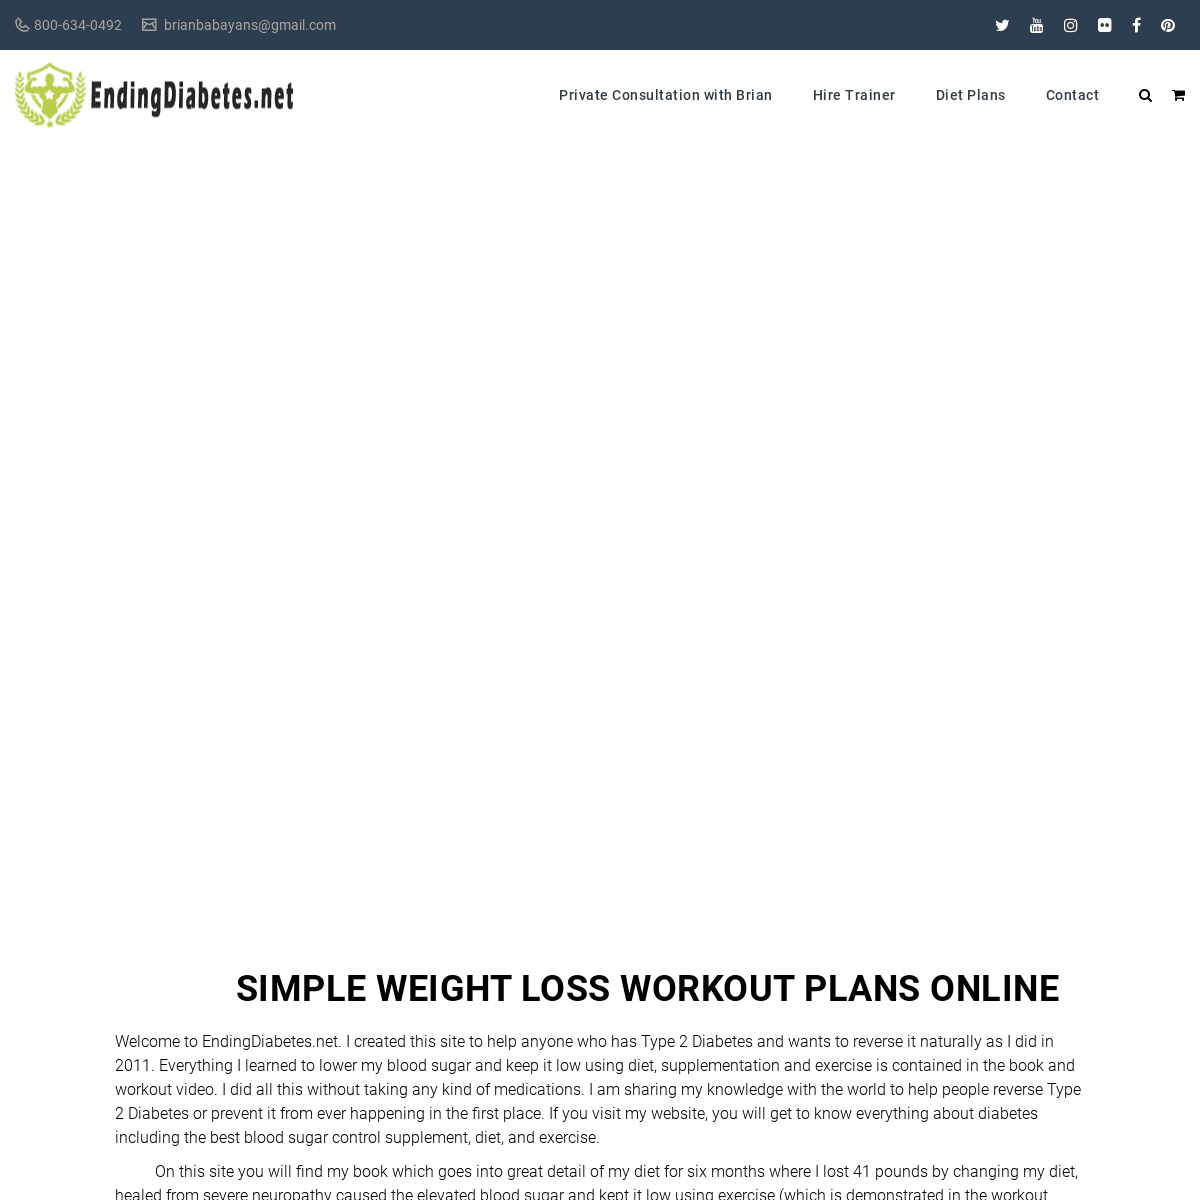 A complete backup of https://endingdiabetes.net